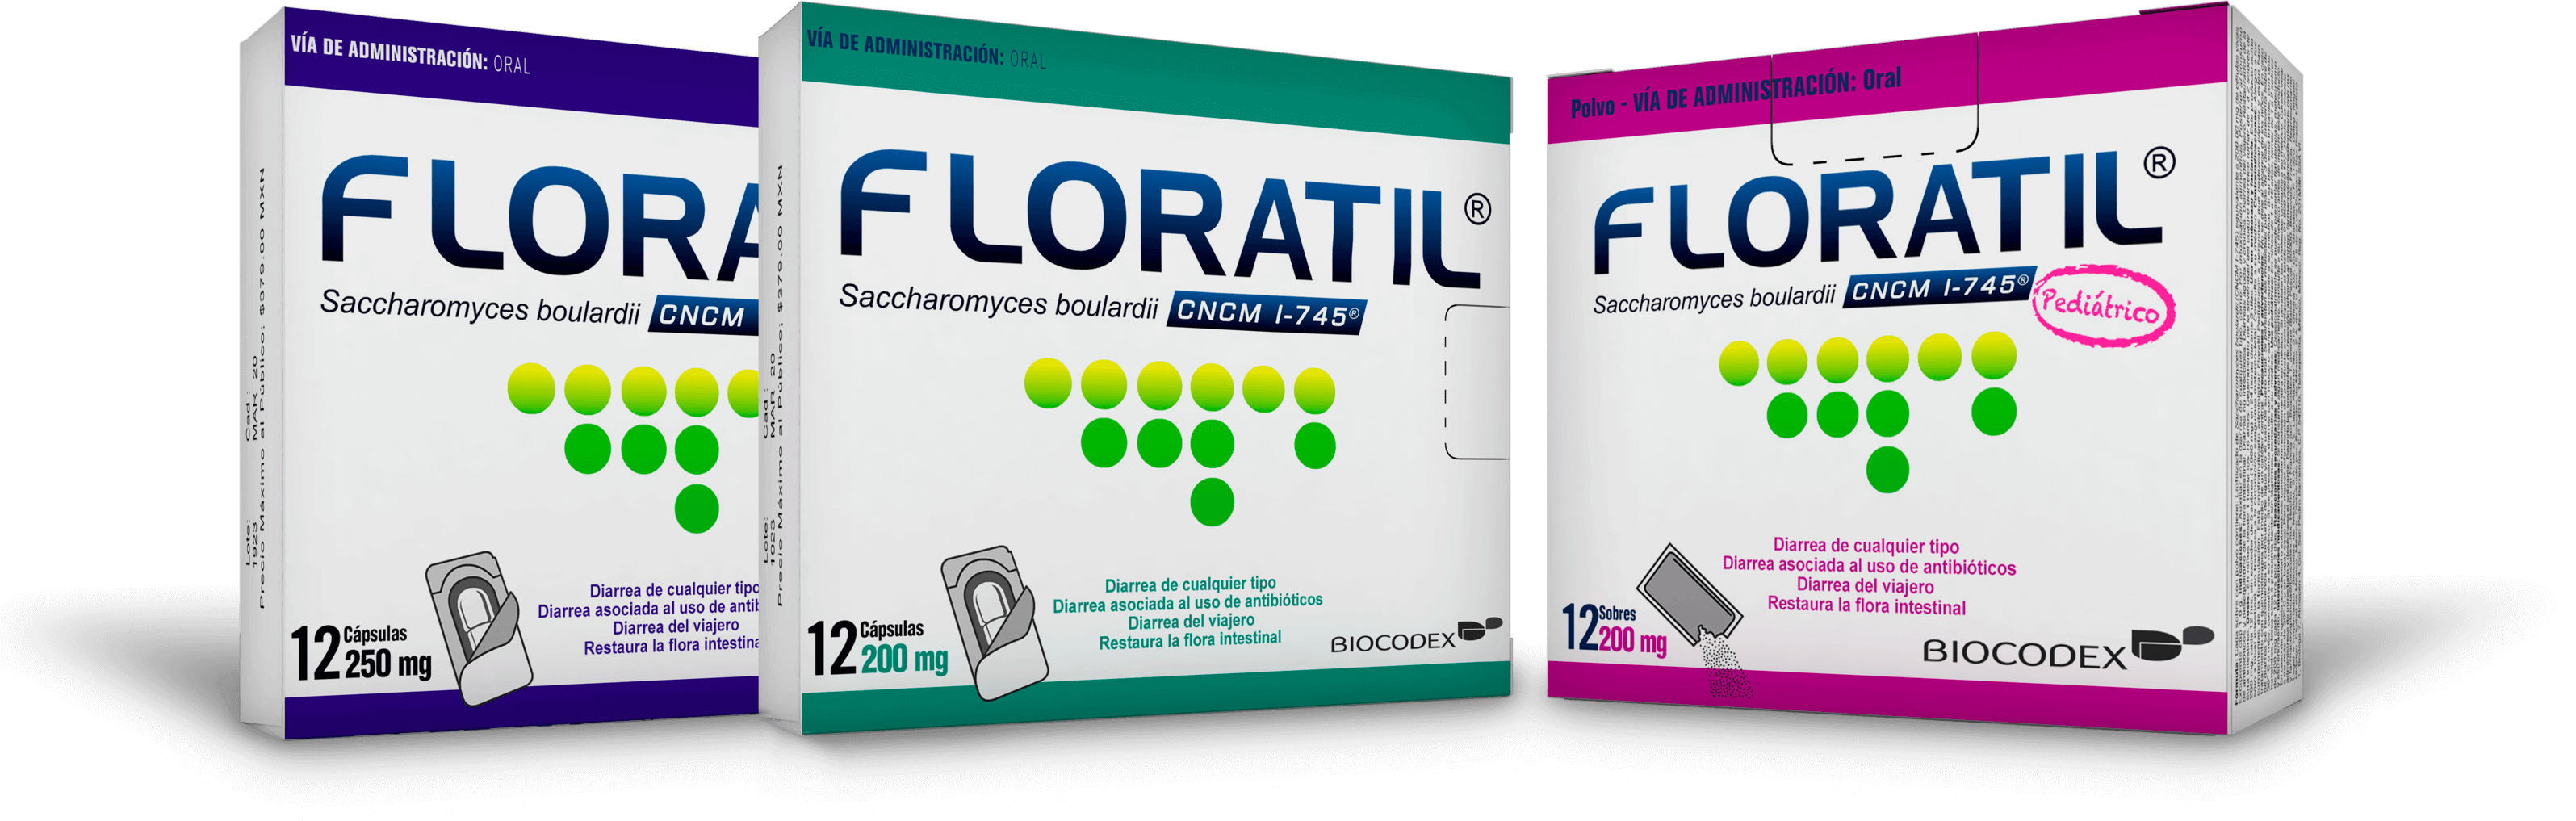 Cajas de productos de Floratil